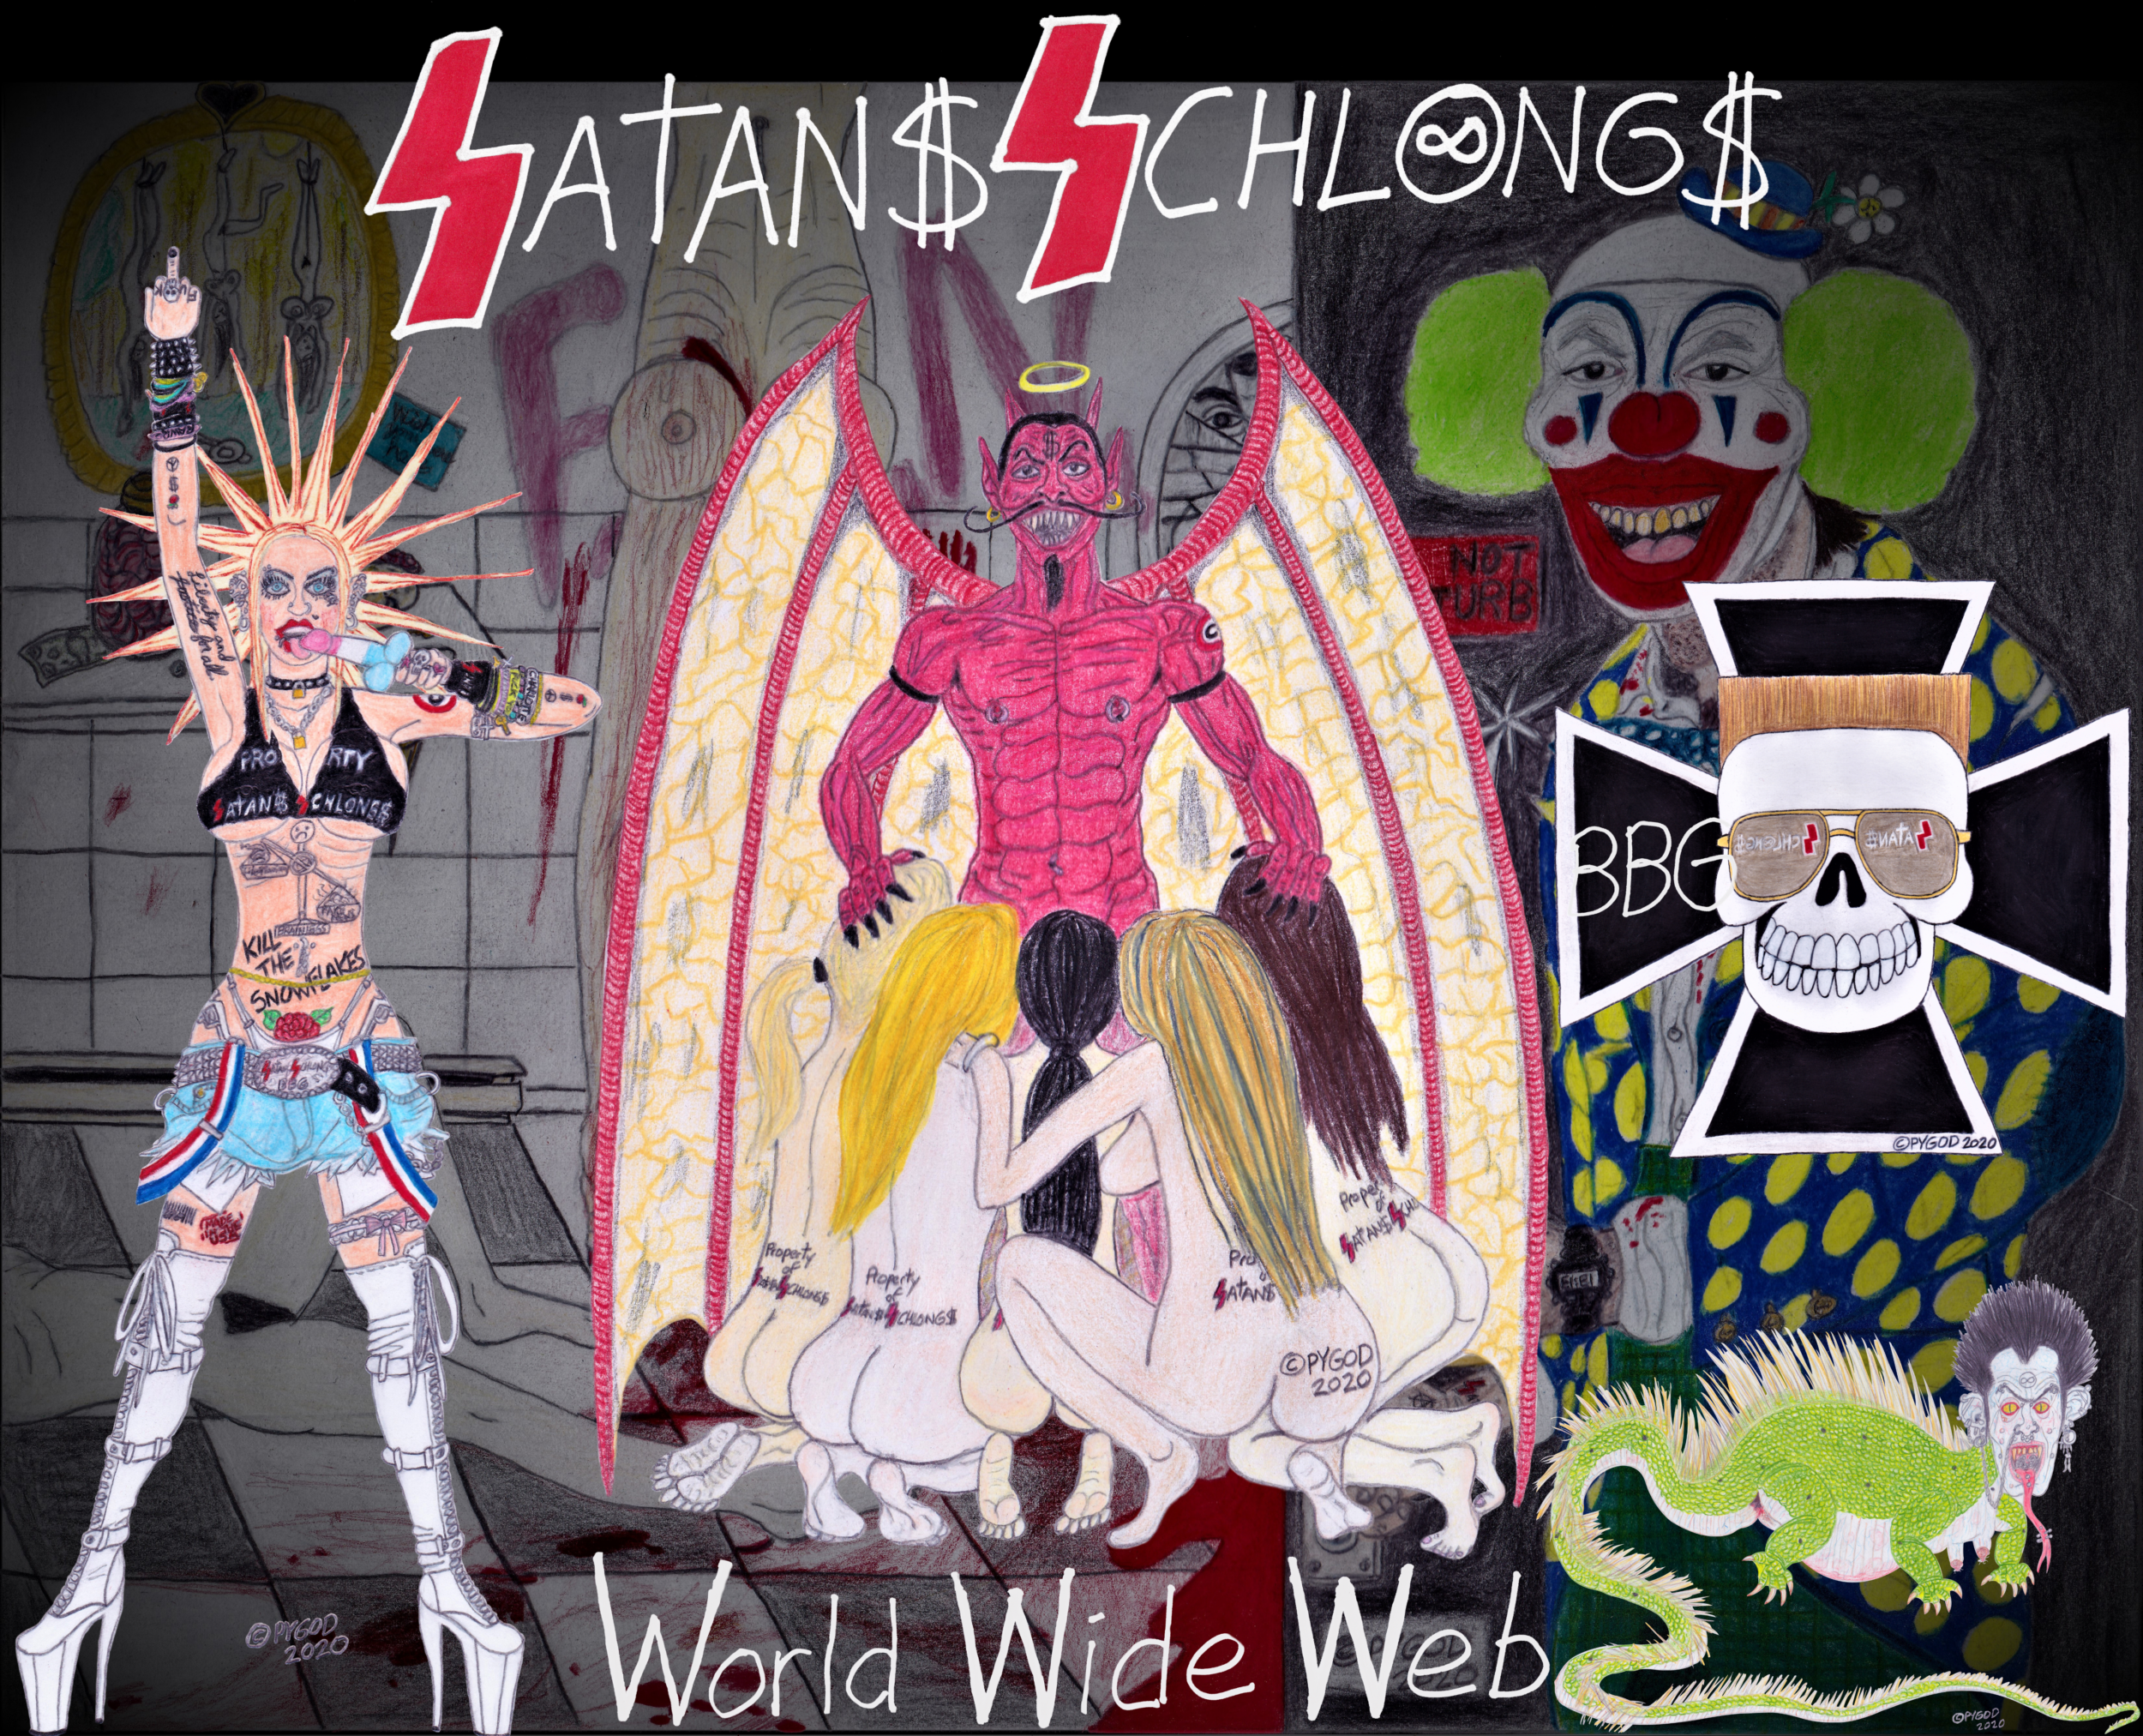 Satans Schlongs by PYGOD Spring/Summer 2021. SatansSchlongs.com